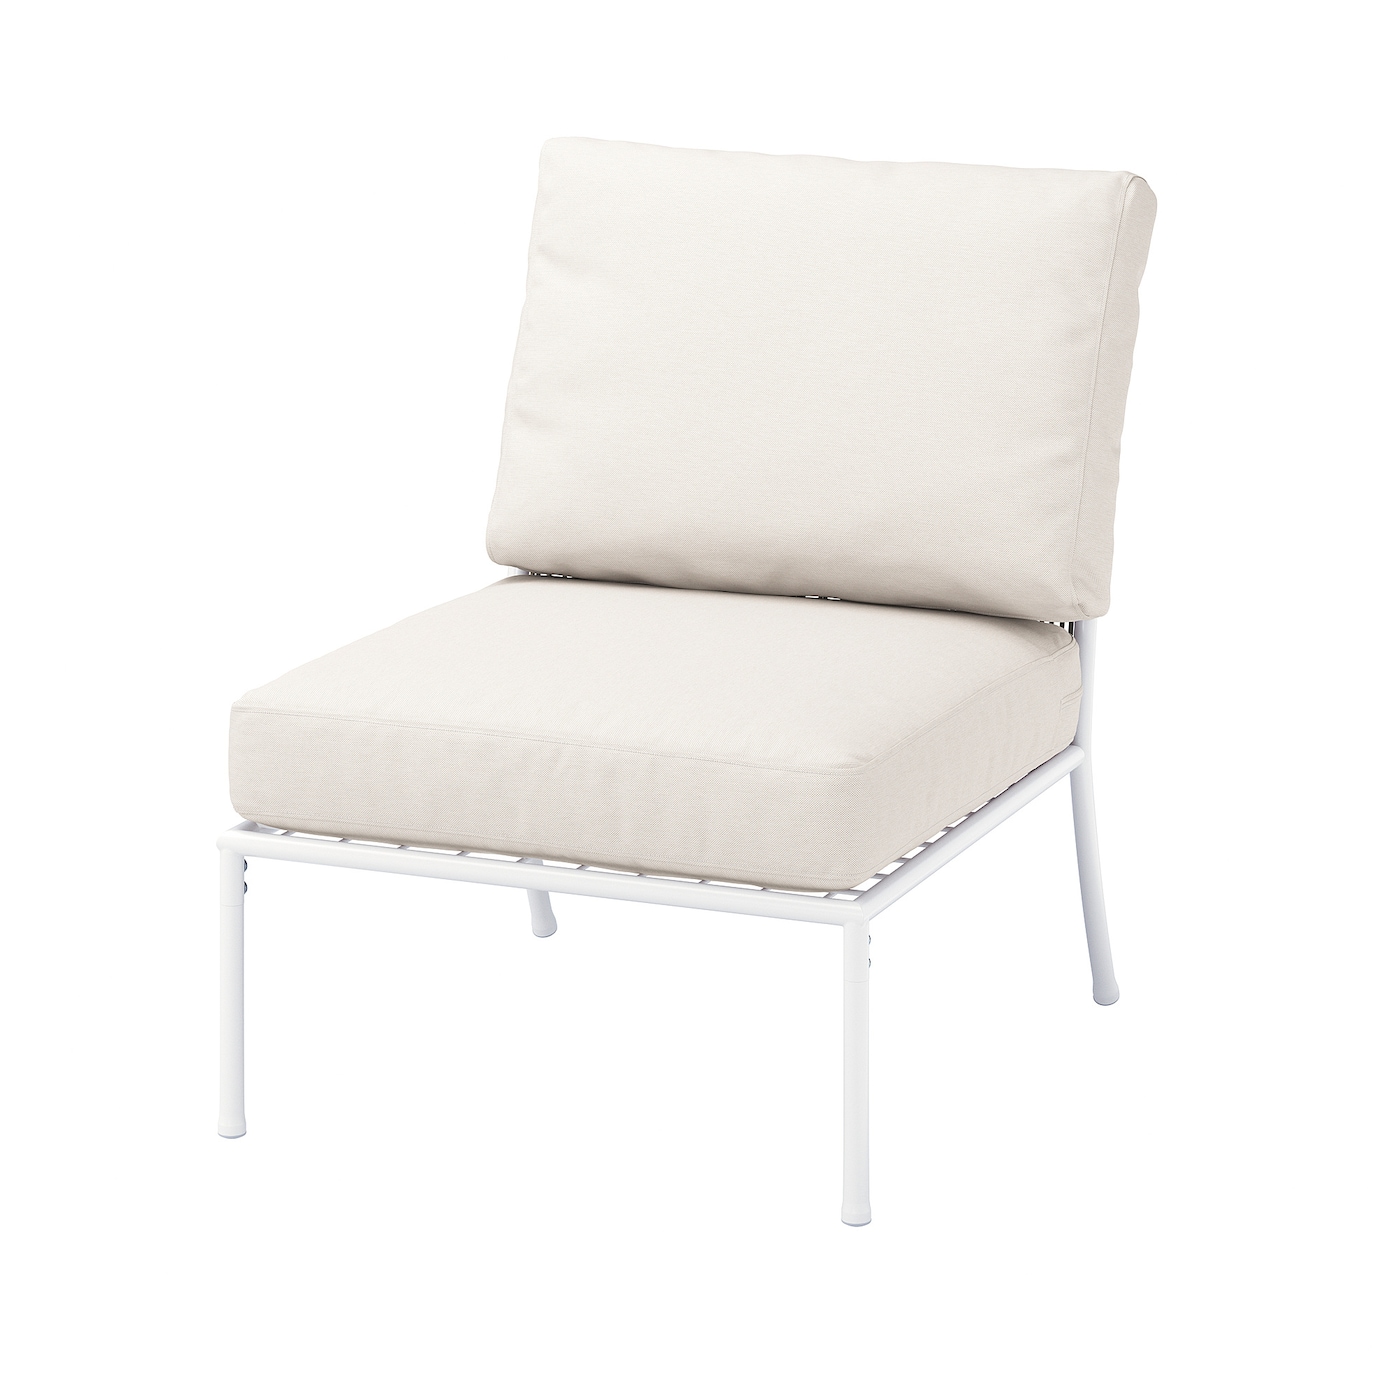 Садовое кресло - IKEA SOLLERÖN/SOLLERON, 76x76x62см, бежевый, СОЛЛЕРОН ИКЕА